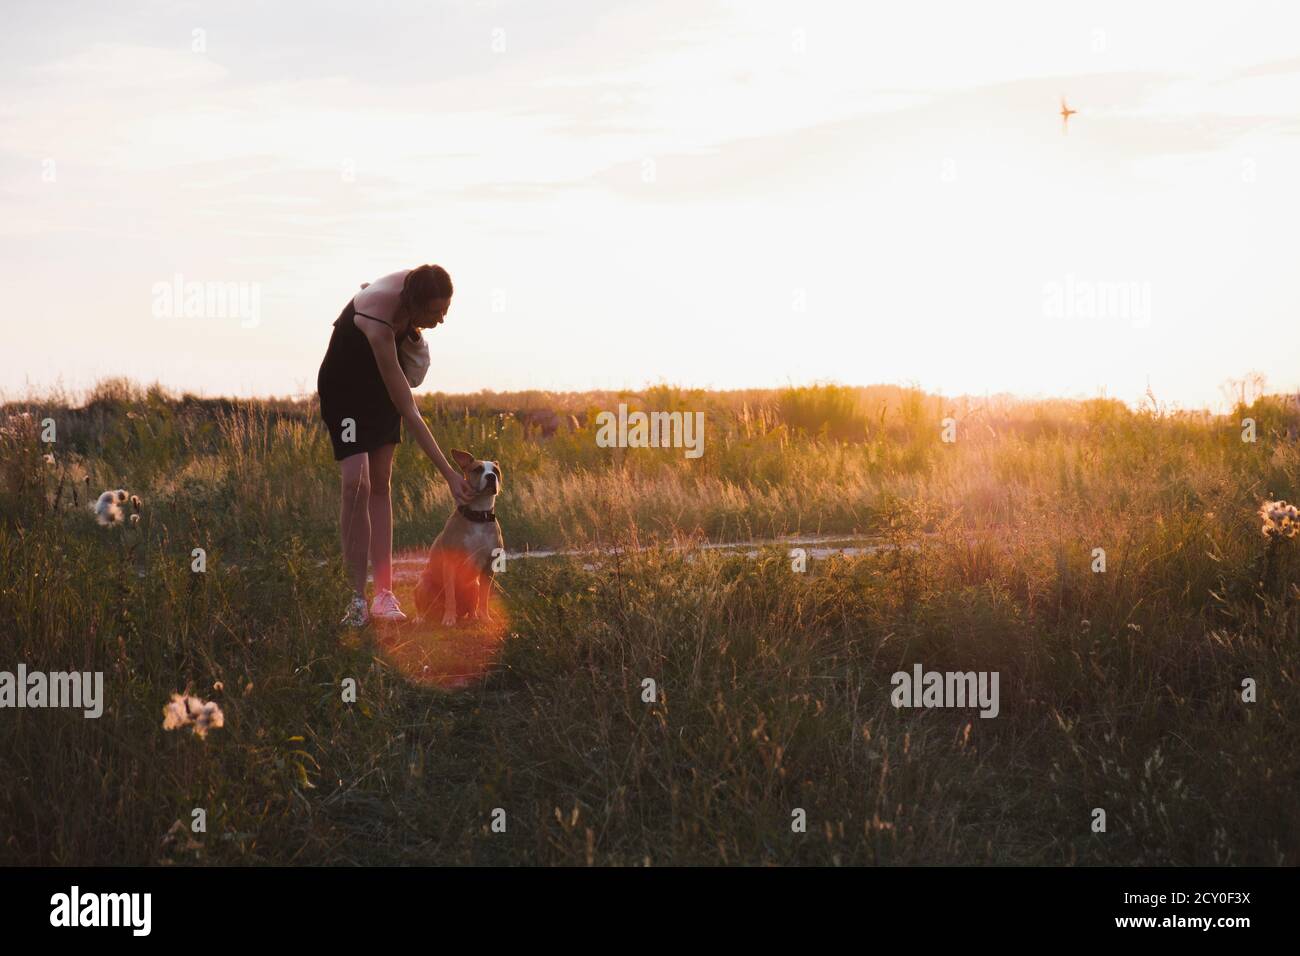 La jeune femme se tient dans le champ avec le chien, les couleurs décolorées pendant le coucher du soleil. Profitez de votre séjour dans la nature avec vos amis, en plein air et en été Banque D'Images